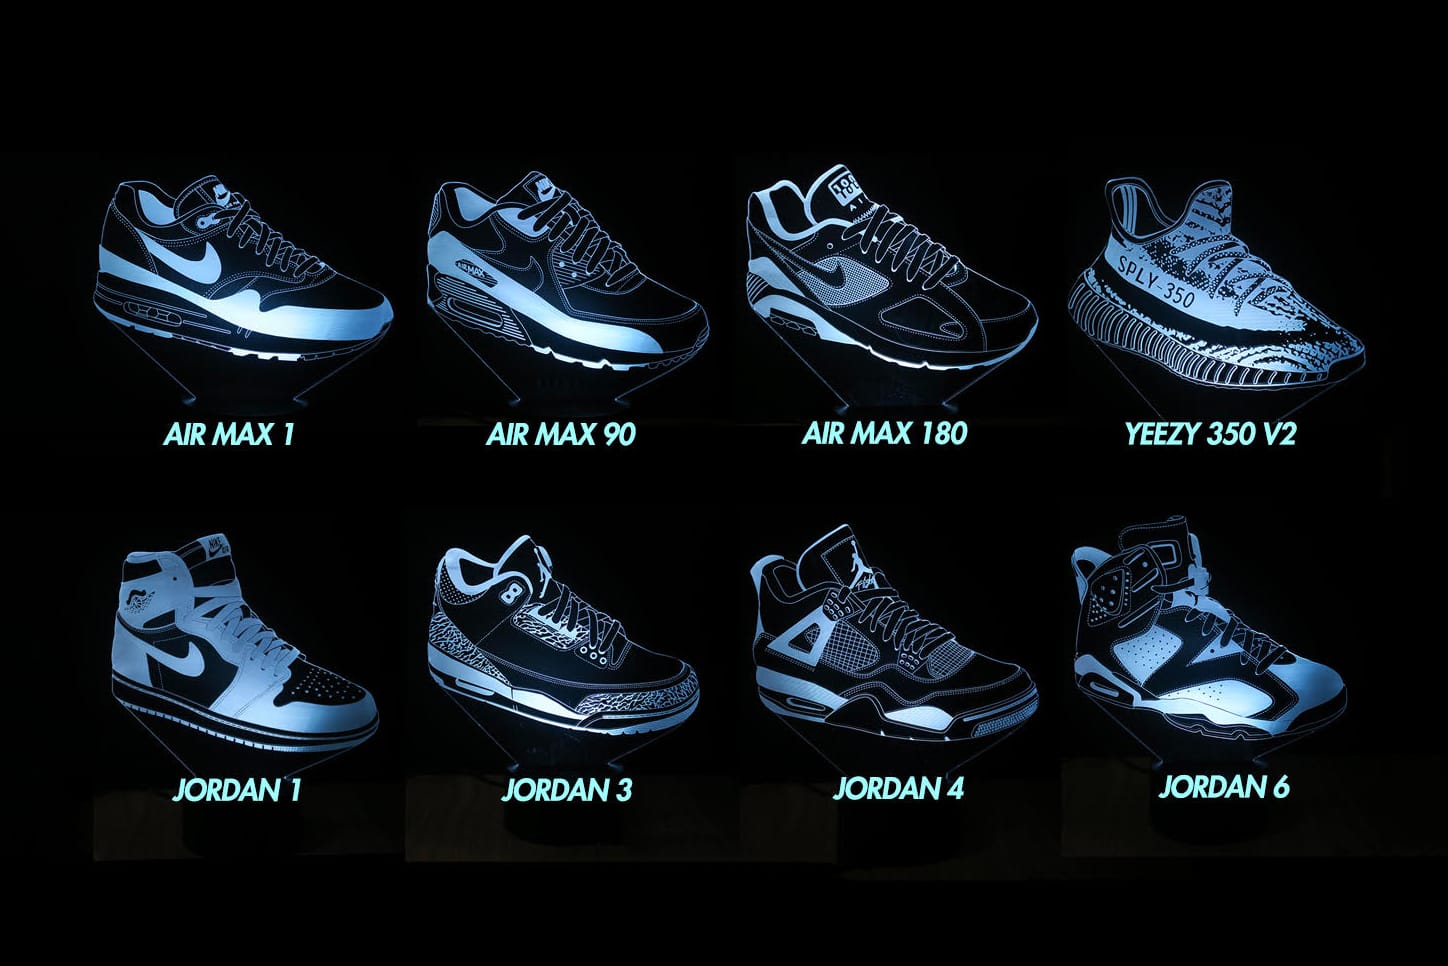 الفتوى بغير علم MK Neon Offers Hyped up Sneaker LED Lights | HYPEBEAST الفتوى بغير علم